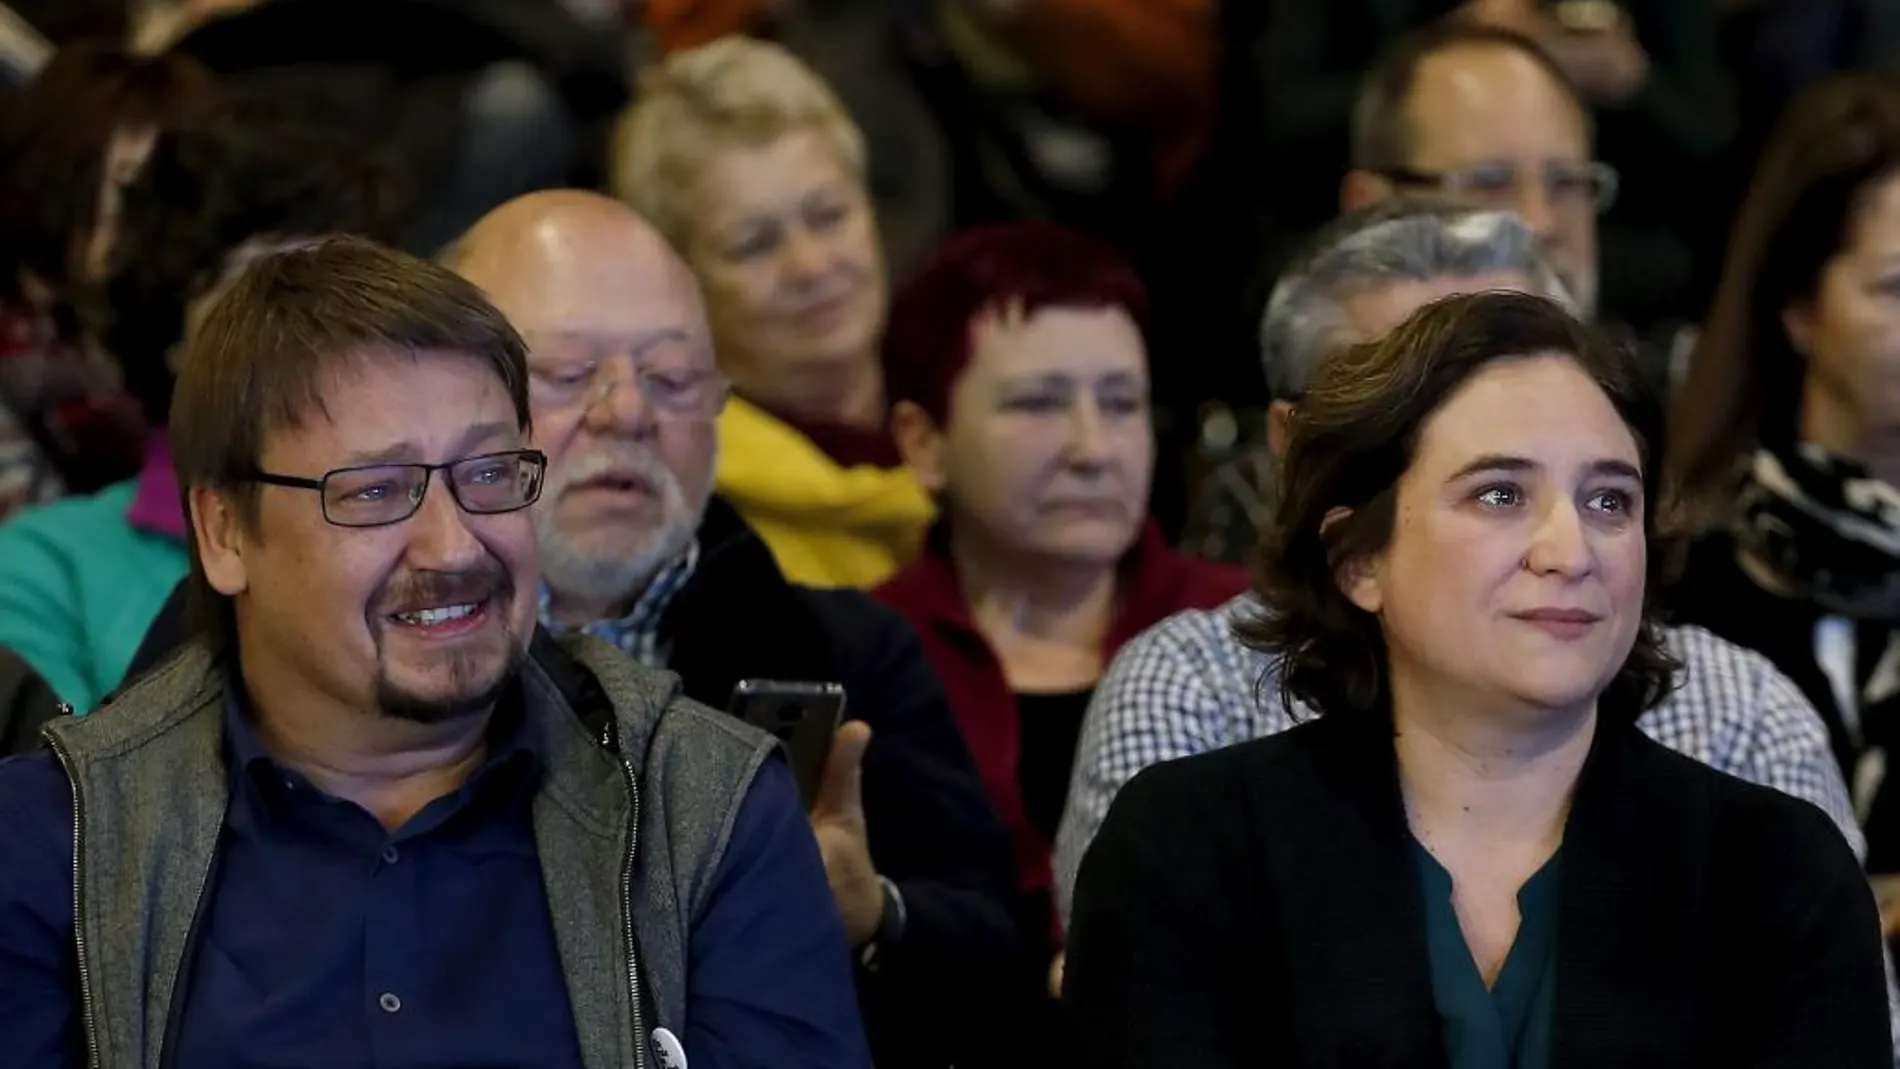 La alcaldesa de Barcelona, Ada Colau, y el líder de Catalunya en Comú, Xavier Domenech, emocionados durante la actuación de Maria Arnal y Marcel Bagés, en el acto de presentación del proceso participativo "Un País en Comú"